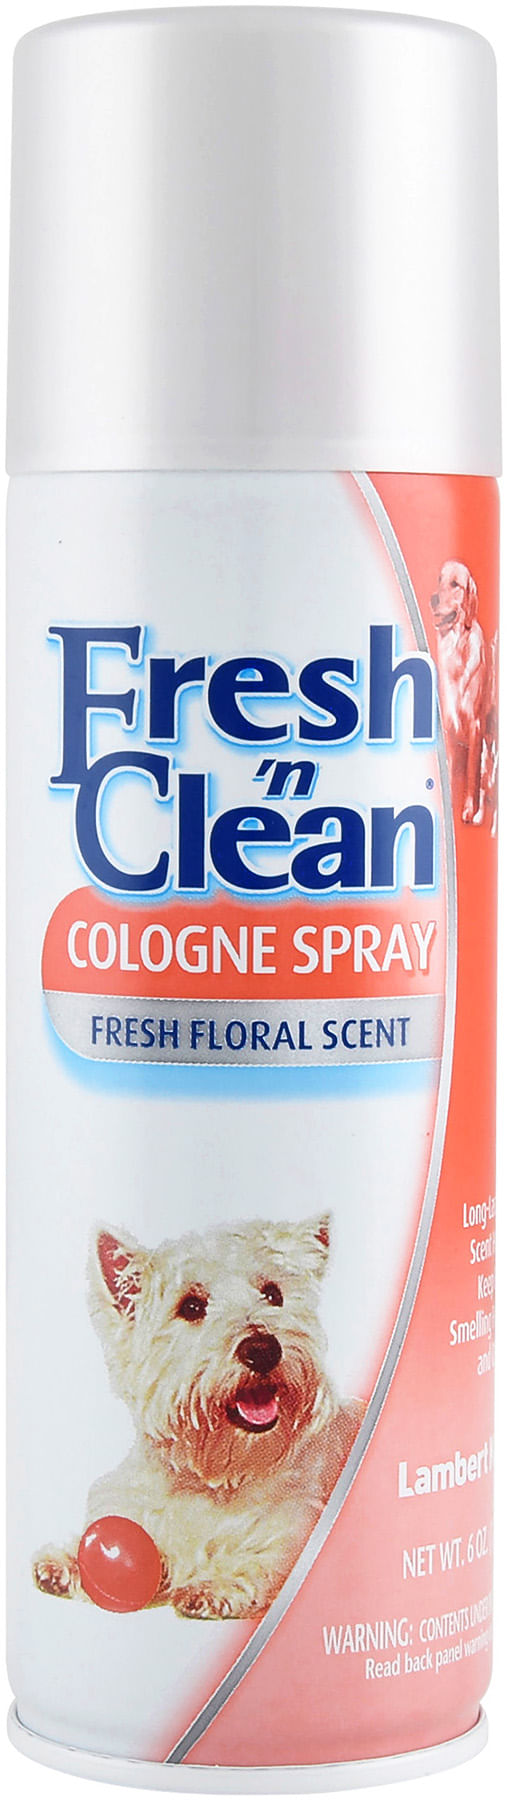 Fresh--n-Clean--174---Cologne-Spray-6-oz-Fresh-Floral